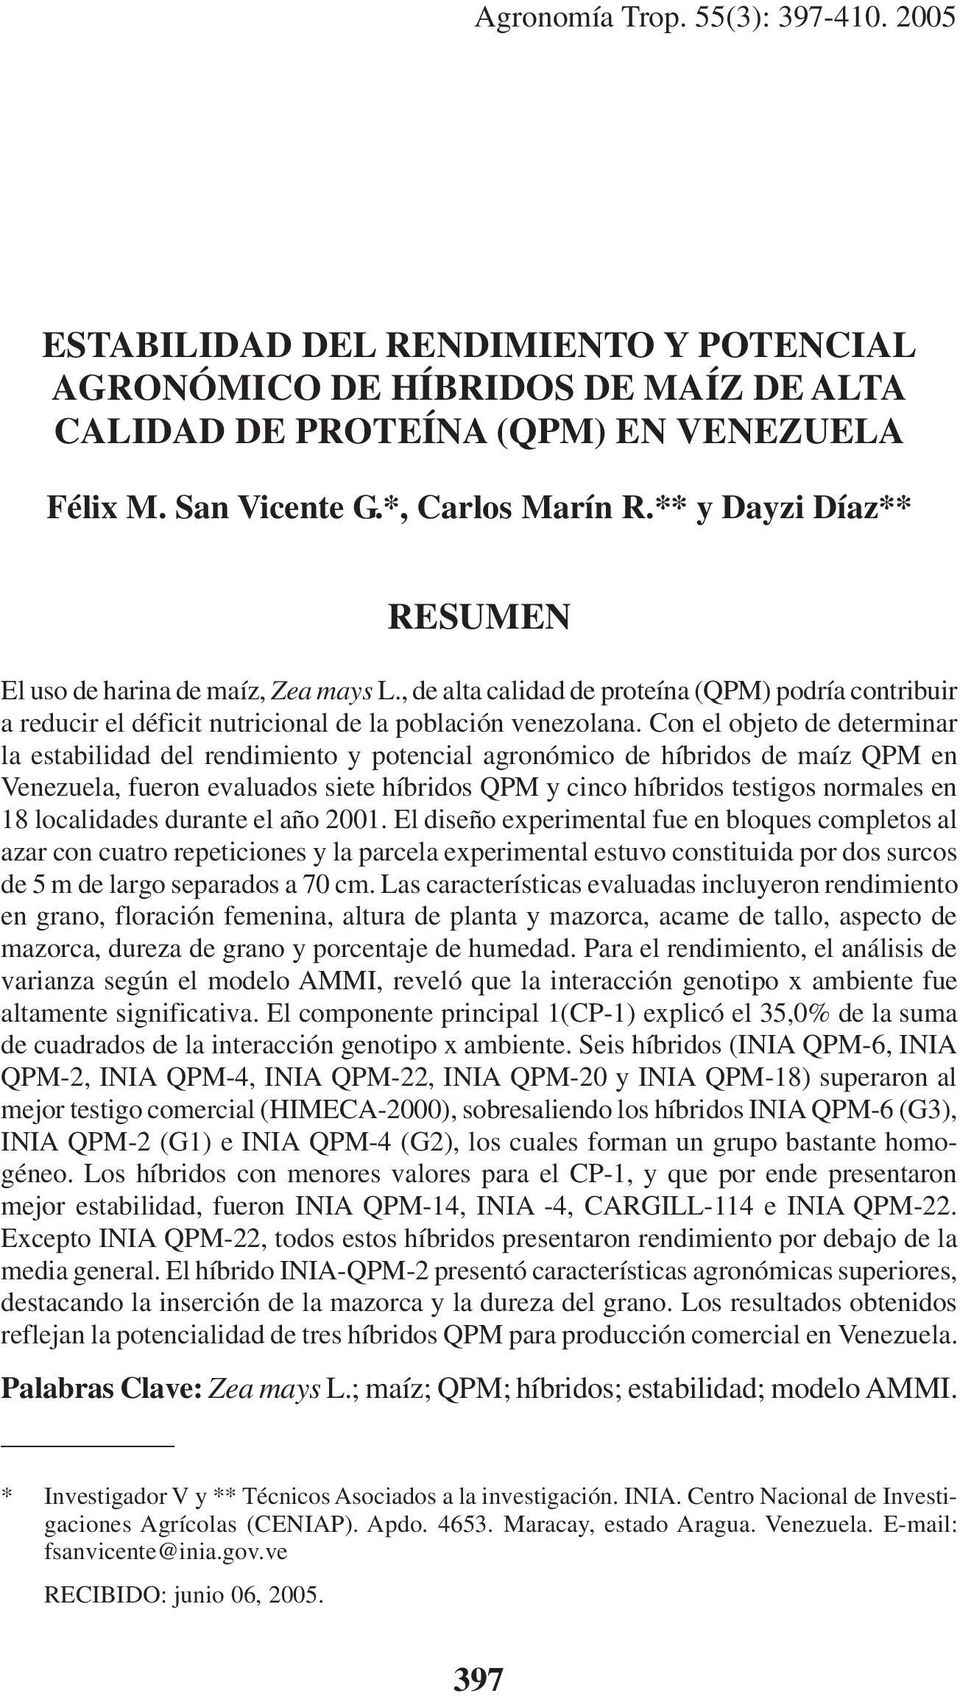 Con el objeto de determinar la estabilidad del rendimiento y potencial agronómico de híbridos de maíz QPM en Venezuela, fueron evaluados siete híbridos QPM y cinco híbridos testigos normales en 18